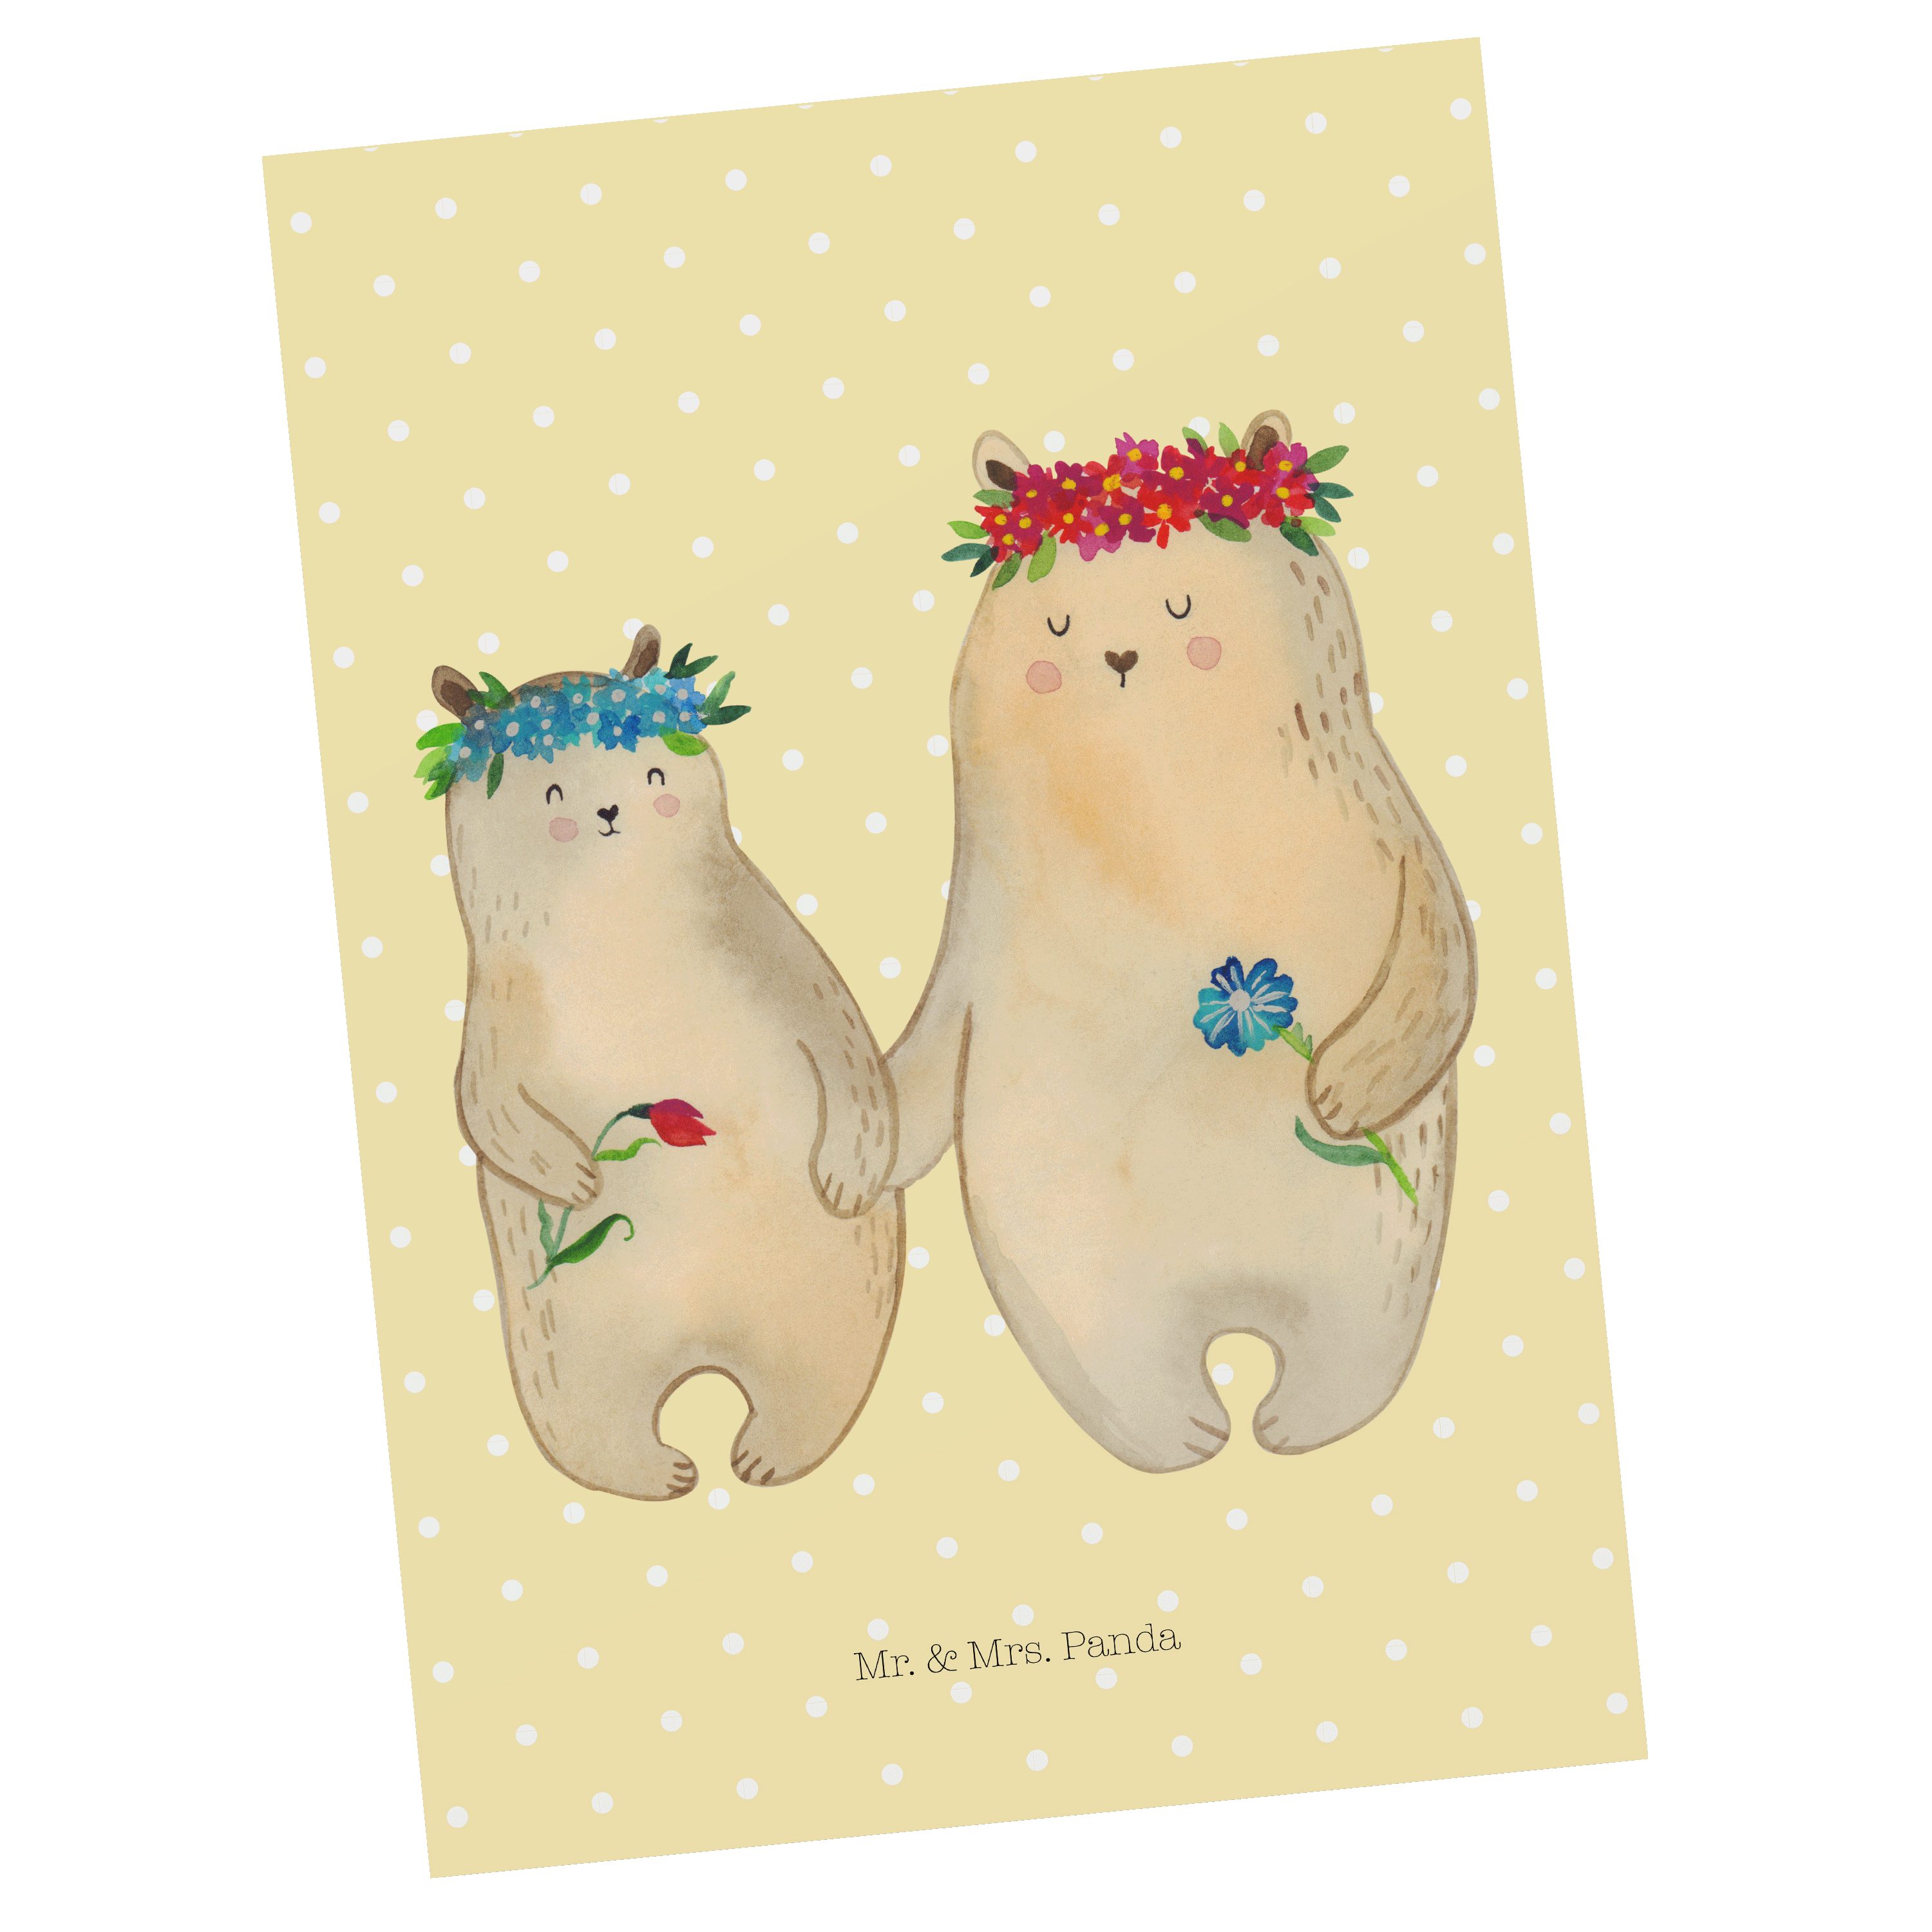 Mr. & Mrs. Panda Postkarte Bären mit Blumenkranz - Gelb Pastell - Geschenk, Geschenk Mama. Mutte